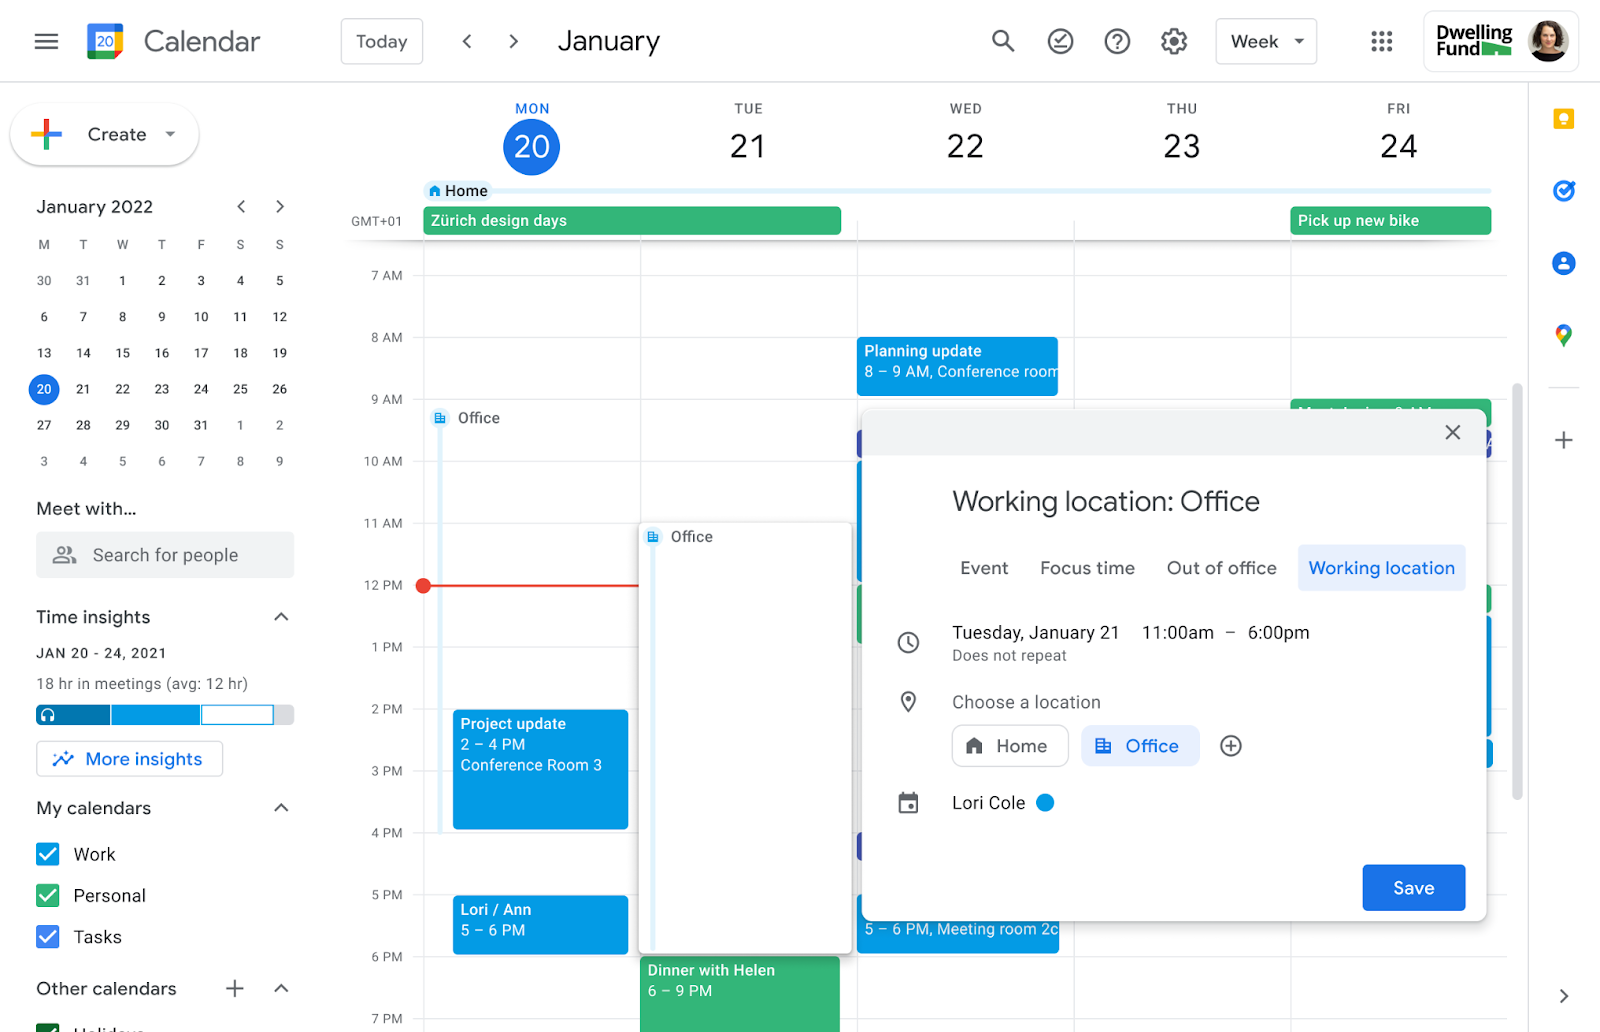 Agregamos más flexibilidad a las ubicaciones de trabajo en el Calendario de Google